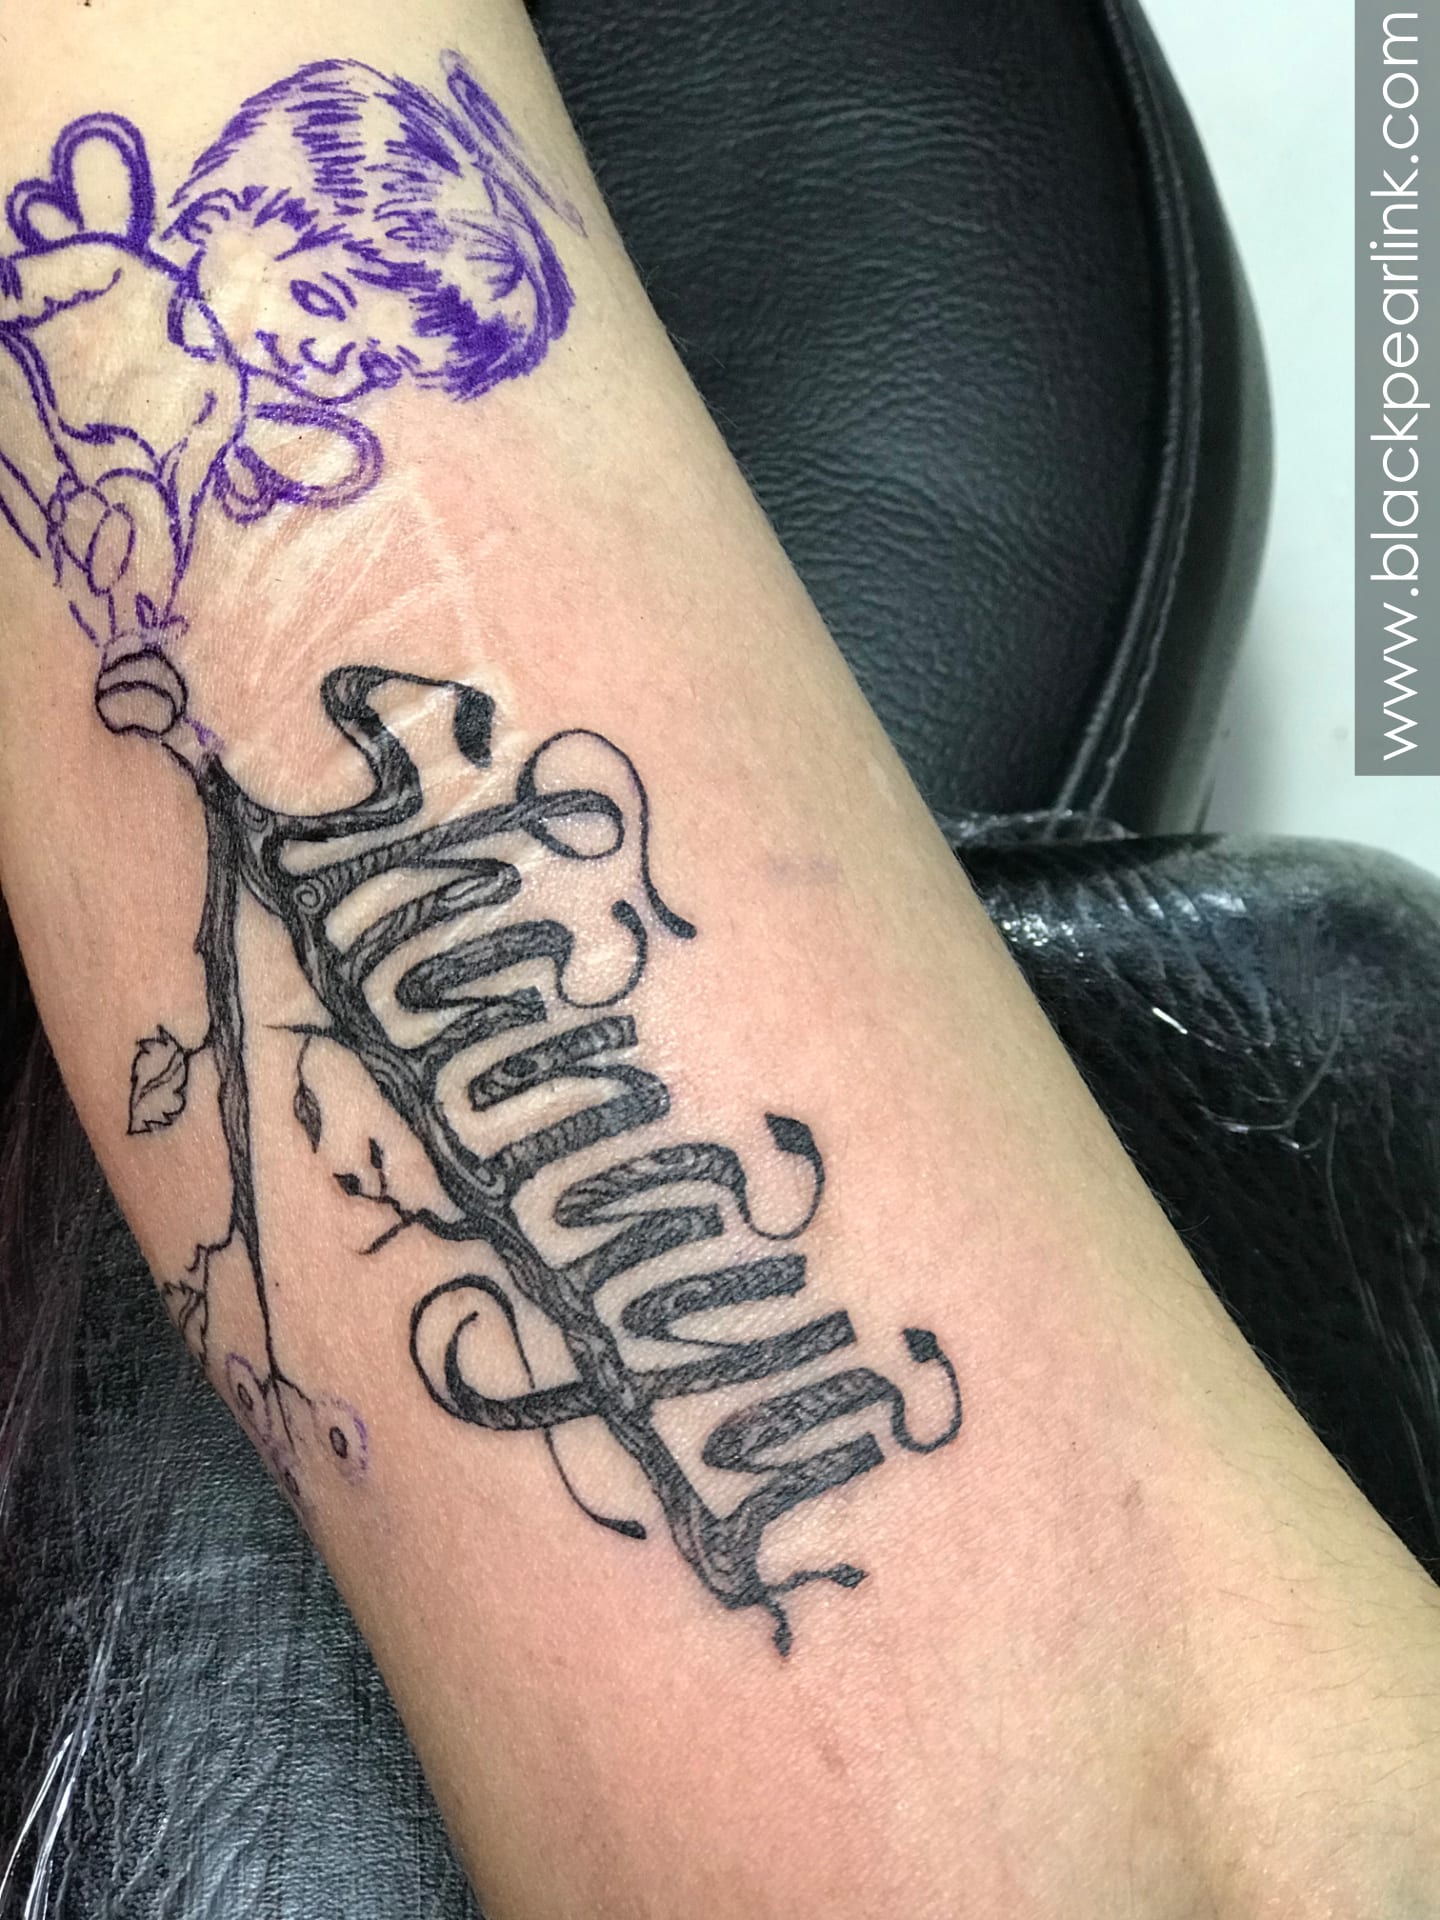 Tattoofee - Cut Marks Cover-up With Angle Tattoo DesignedDone at  @teamtattoofee Thnku So Much Victor Bro 🌺🌸🤗😊🙏🏻 #tattoo #tattoos #ink  #inked #art #tattooed #tattooartist #love #tattooart #follow #like  #instagood #artist #me #tattoolife #